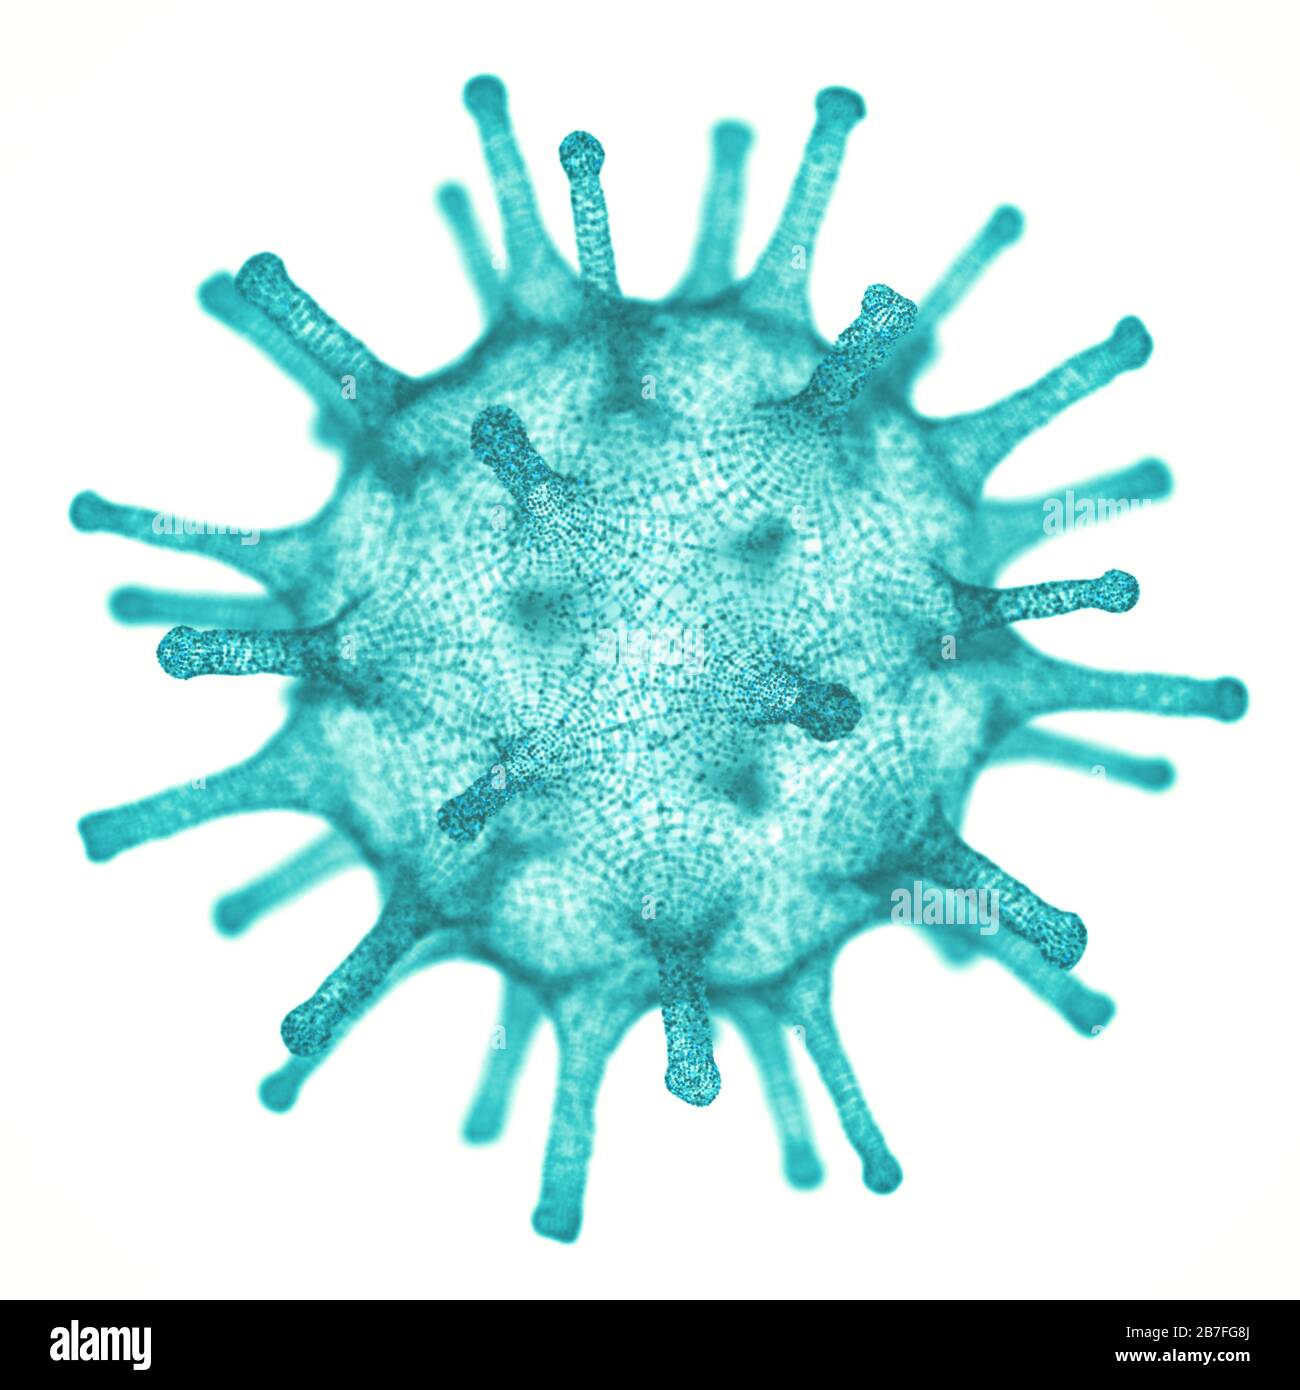 Virus concettuale illustrativo. Immagine di un virus, patogeno con una forma virale generica. Figura 3D. Foto Stock